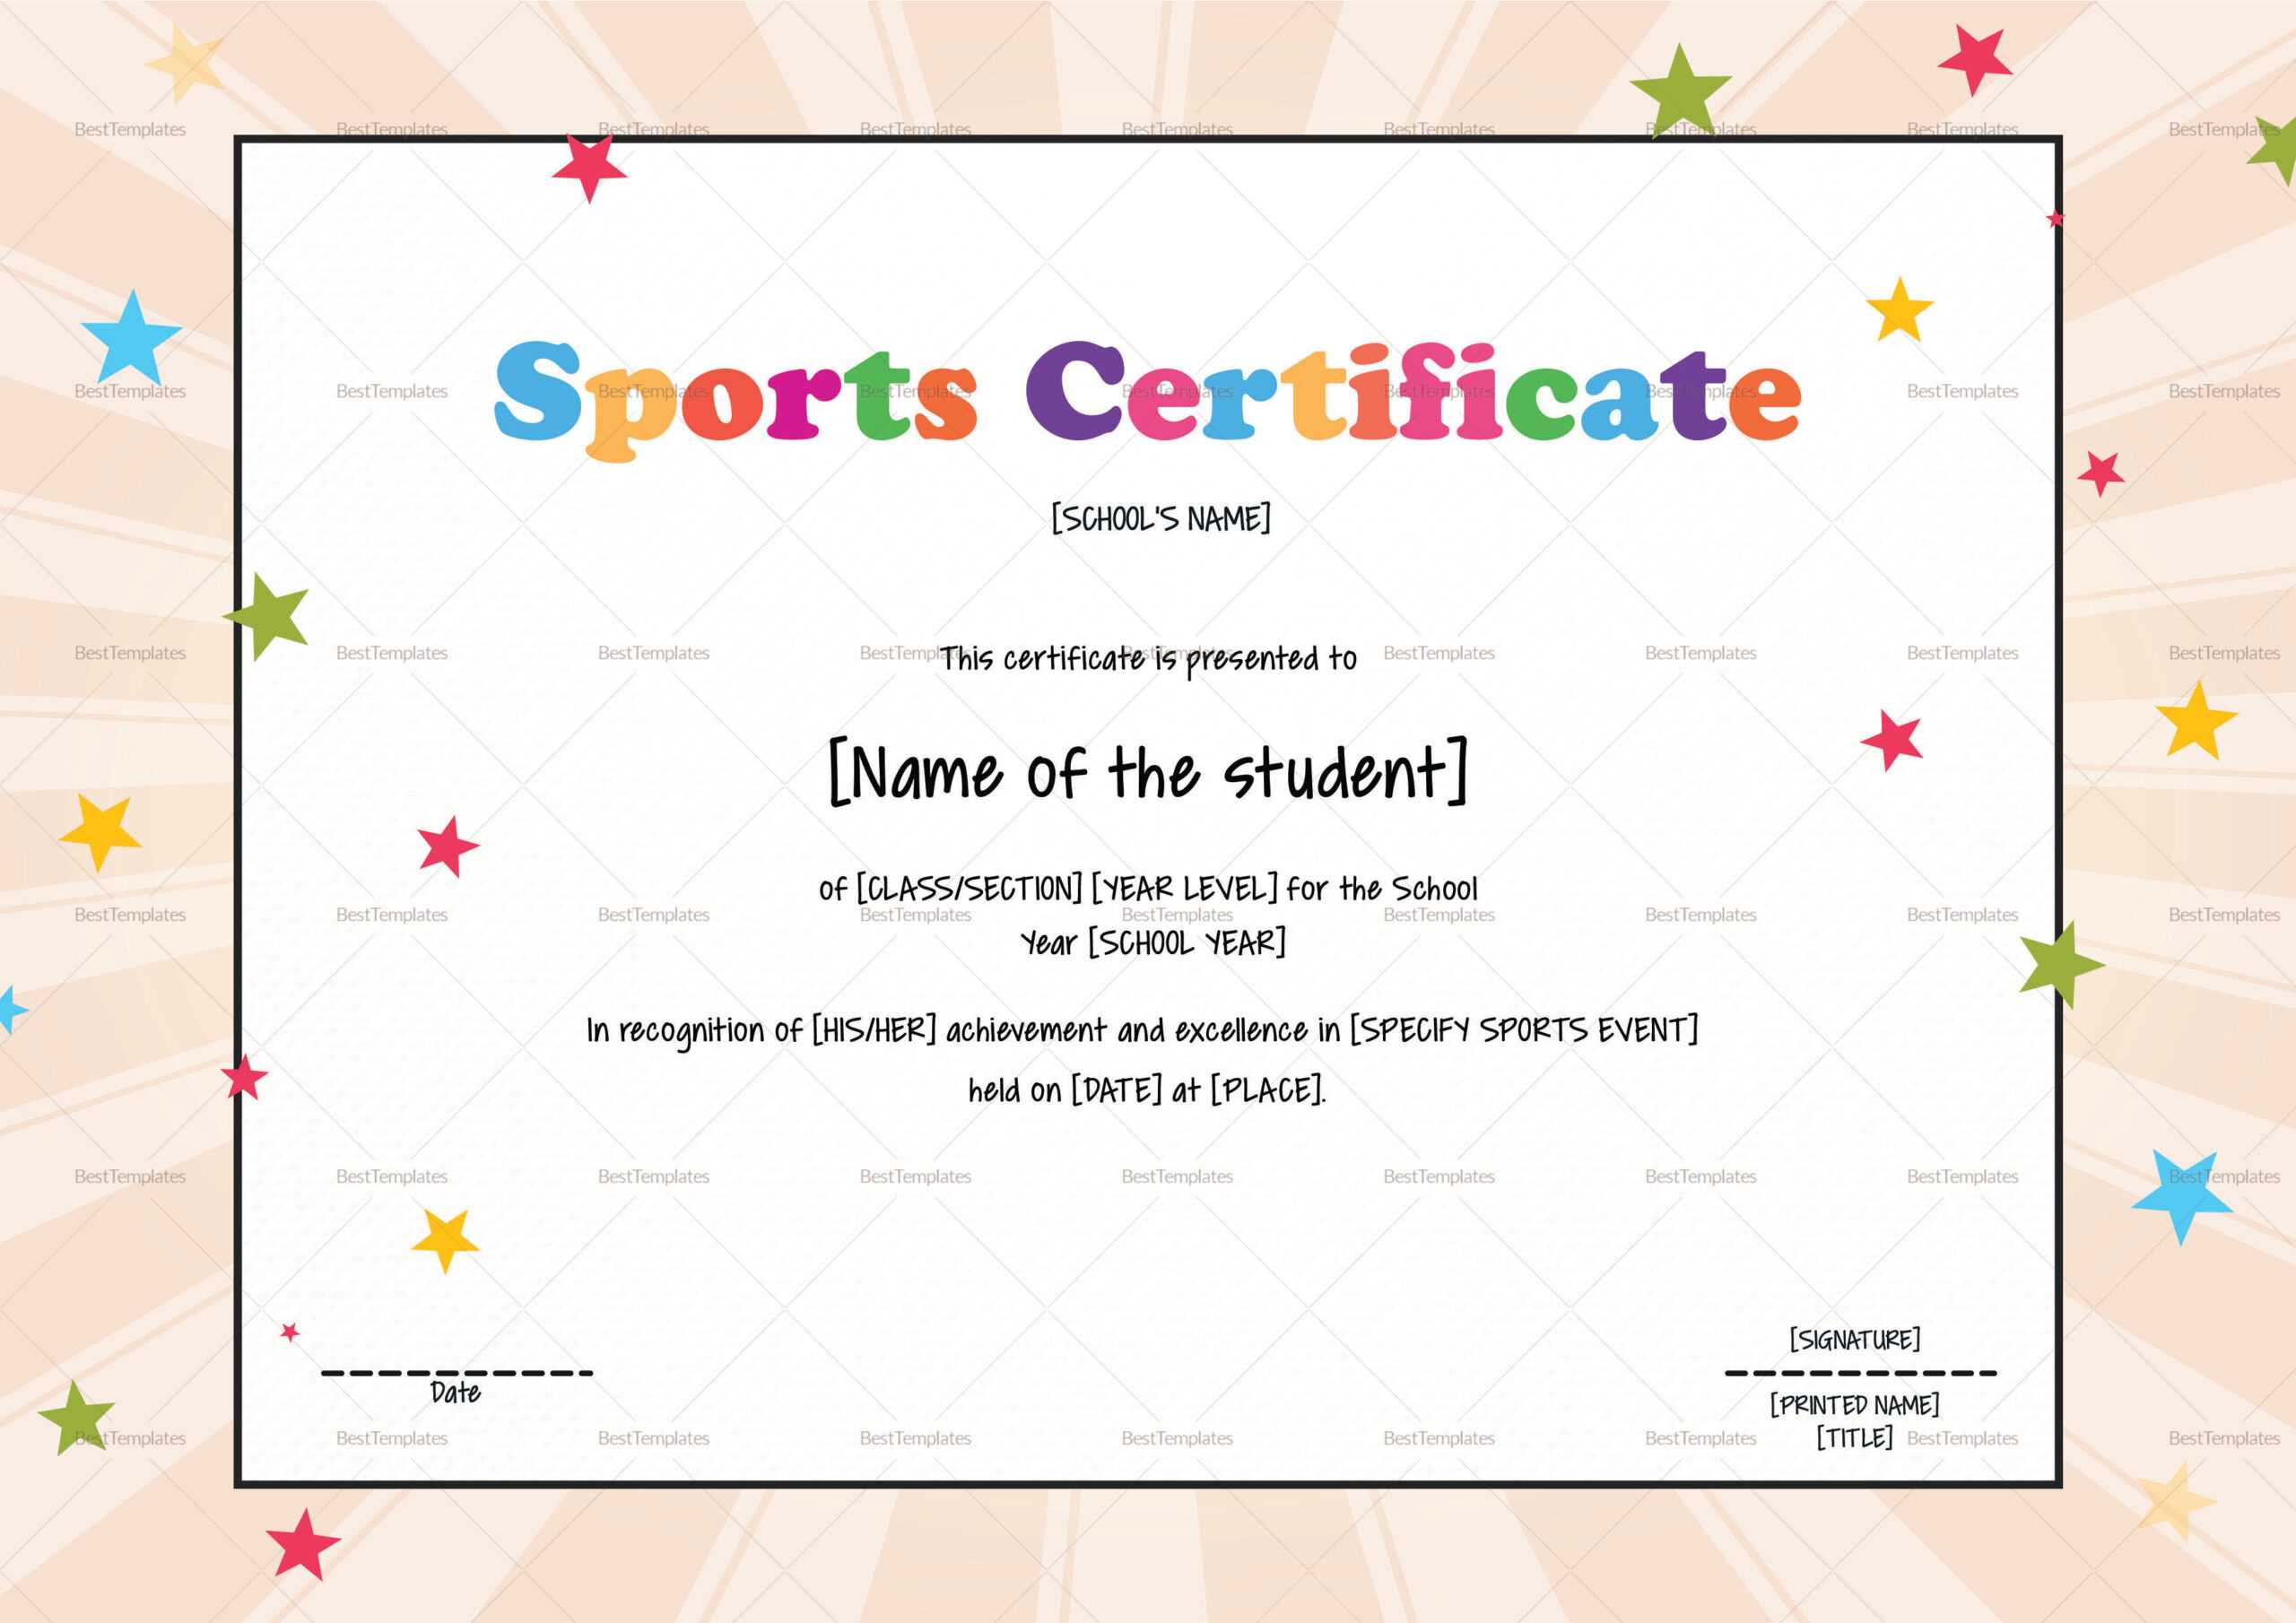 Kids Sports Certificate Template In Children's Certificate Template